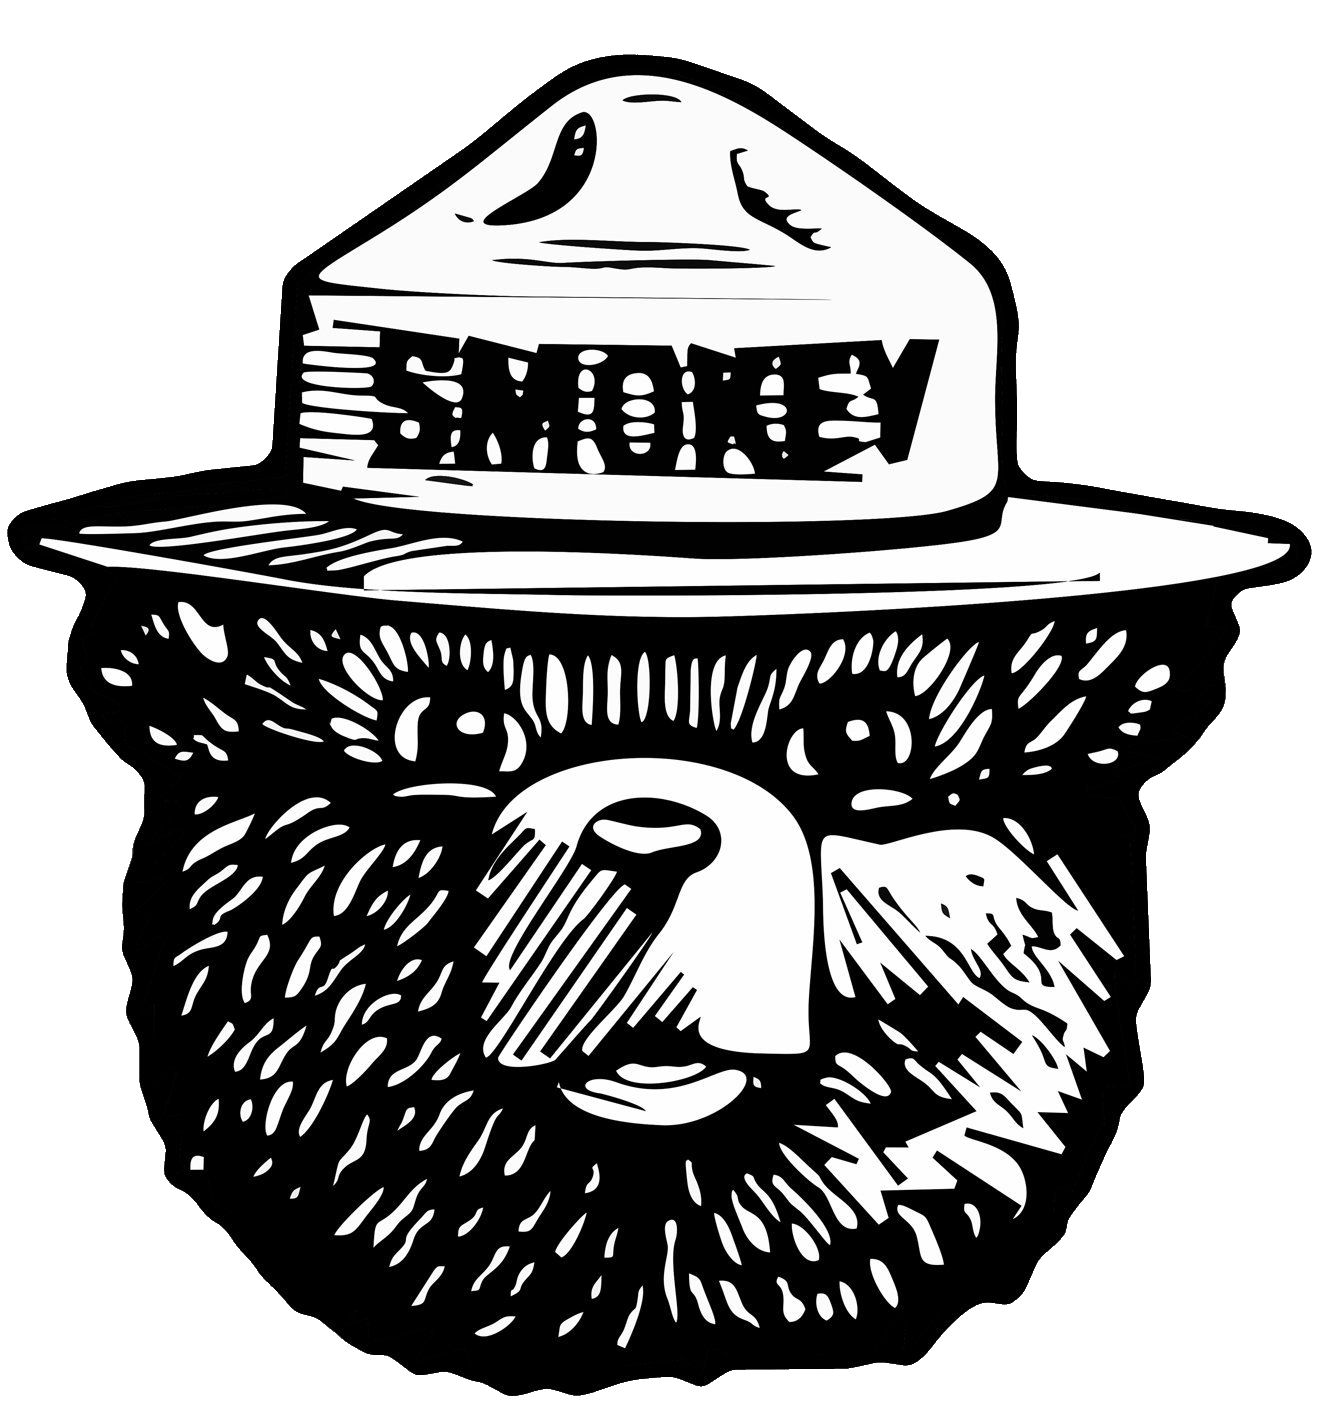 The Smokey Bear Blank Meme Template